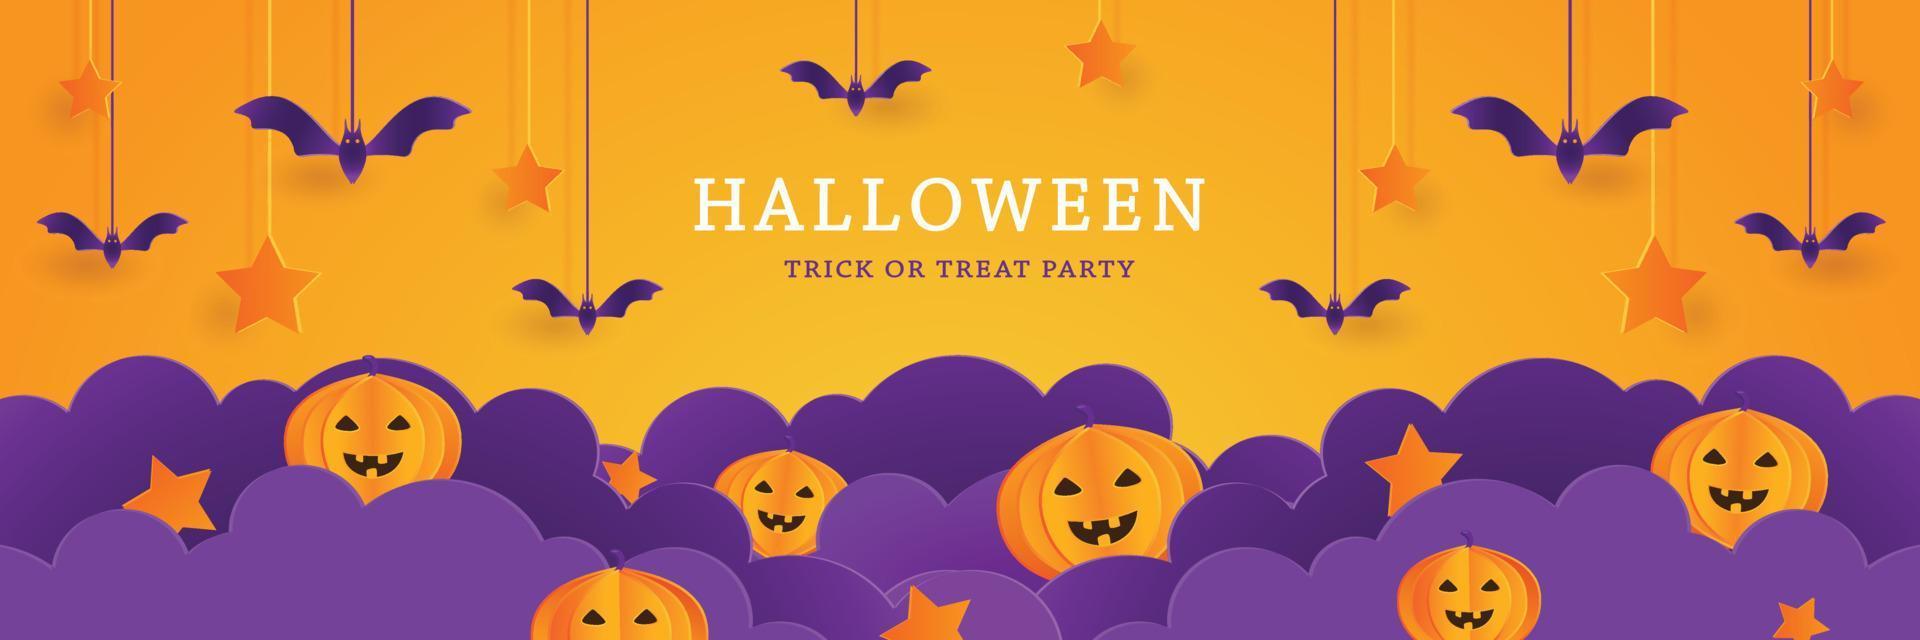 modelo de banner de halloween com estilo de corte de papel em nuvem e personagem de desenho animado fofo de abóbora, morcego, feriado de festa feliz, vetor de fundo de design de layout